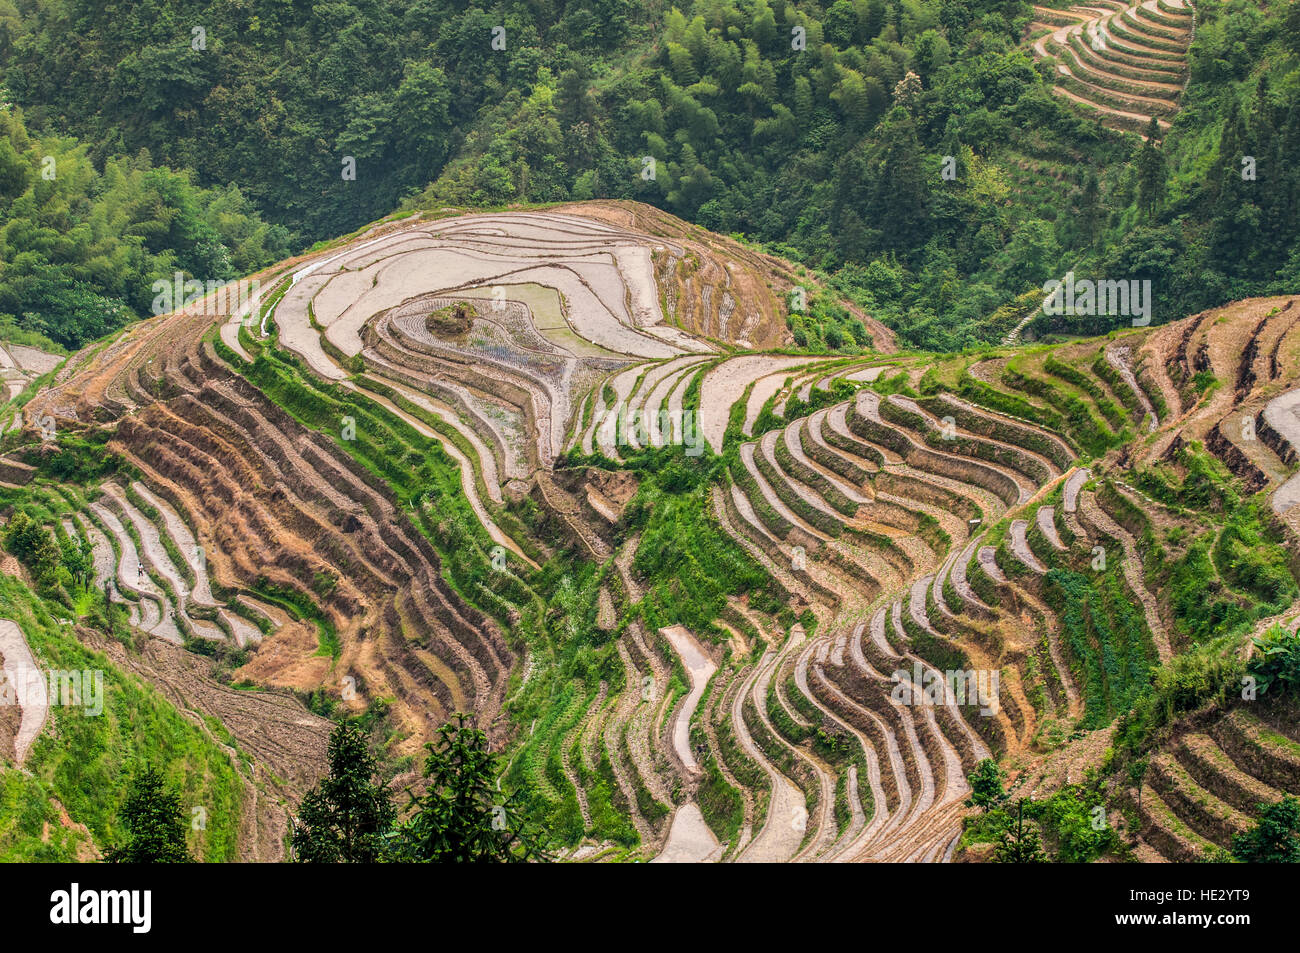 Longsheng Longji Dragon Spine Rice Terraces paddies fields on hillside Longsheng, guilin, Guangxi, China. Stock Photo